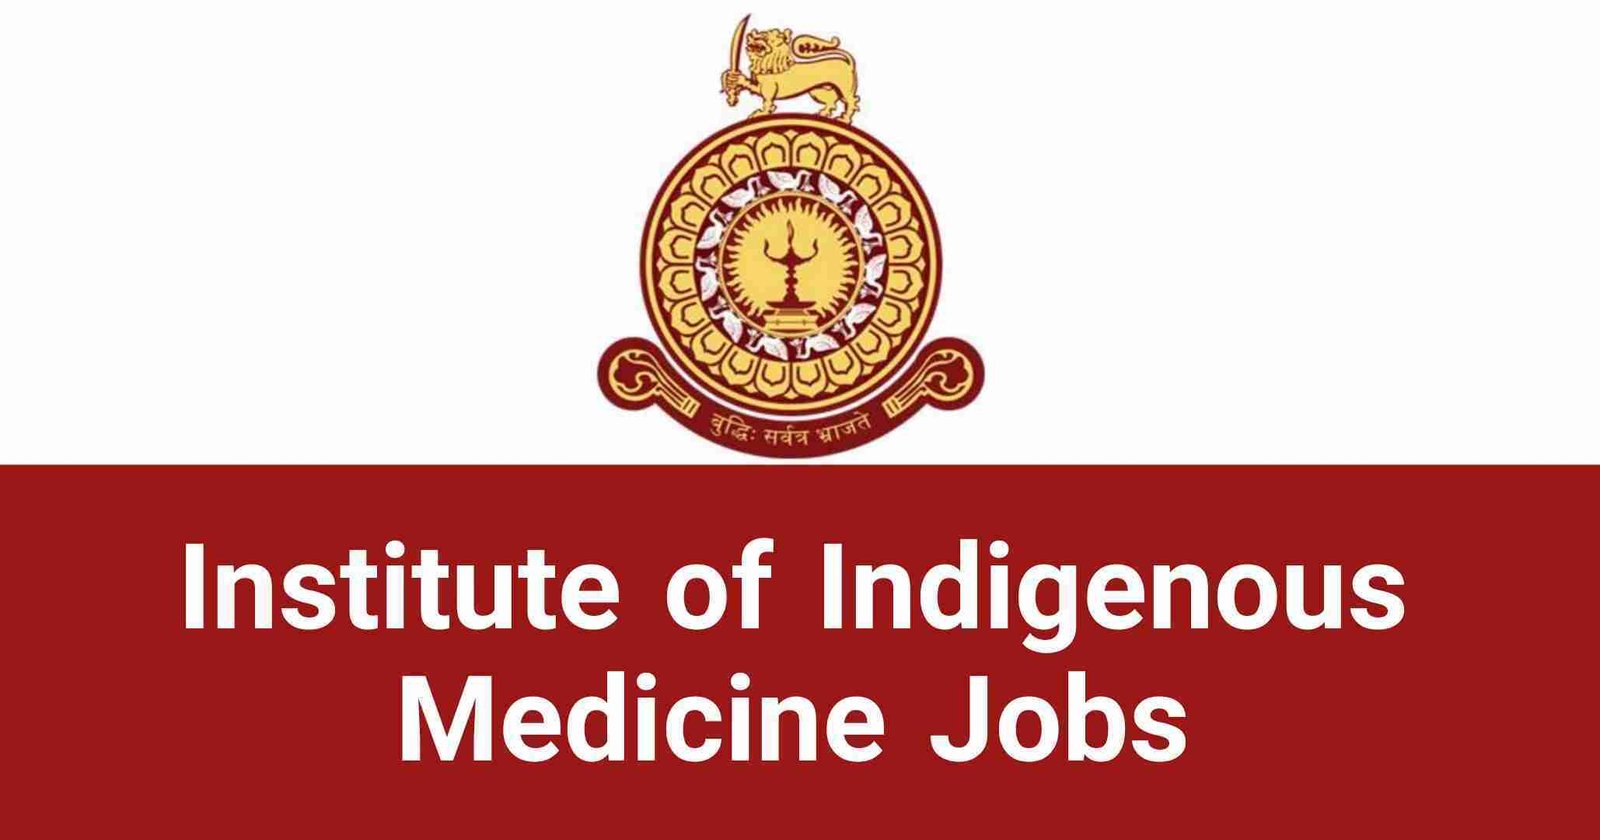 Institute of Indigenous Medicine Jobs Vacancies